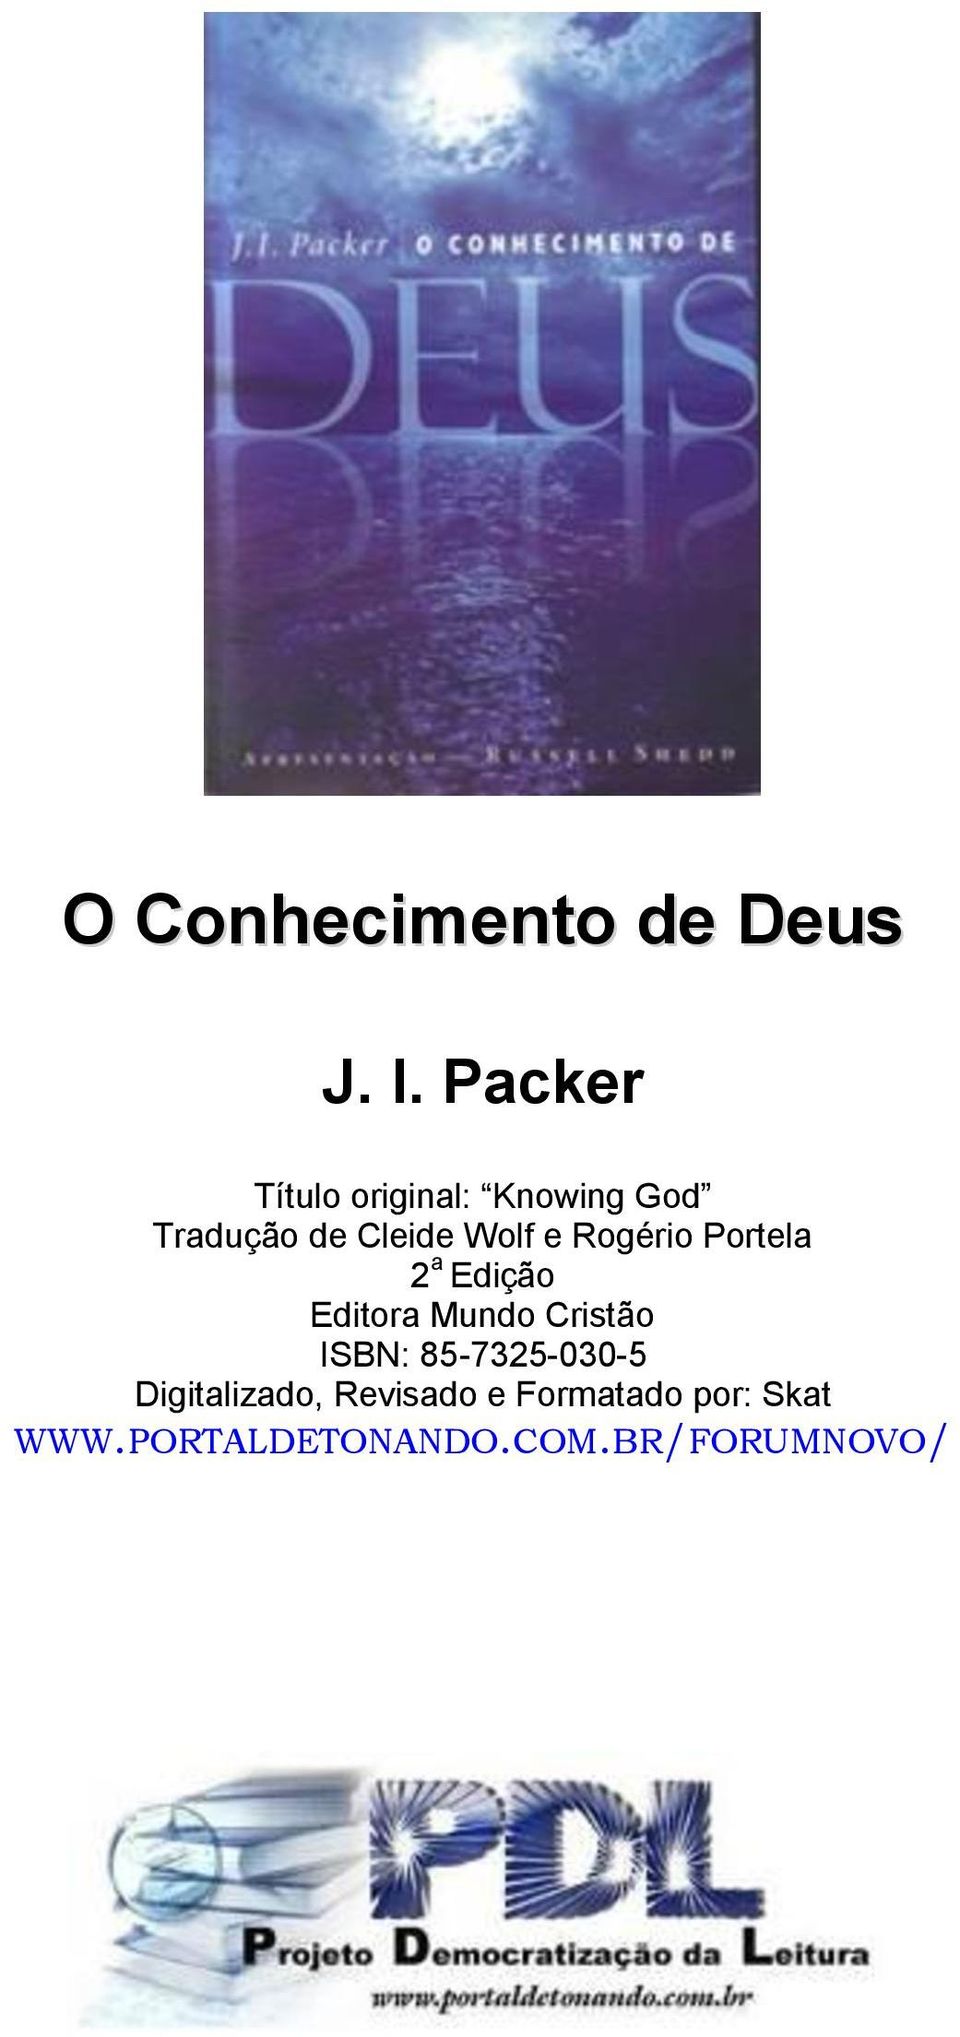 e Rogério Portela 2 a Edição Editora Mundo Cristão ISBN: